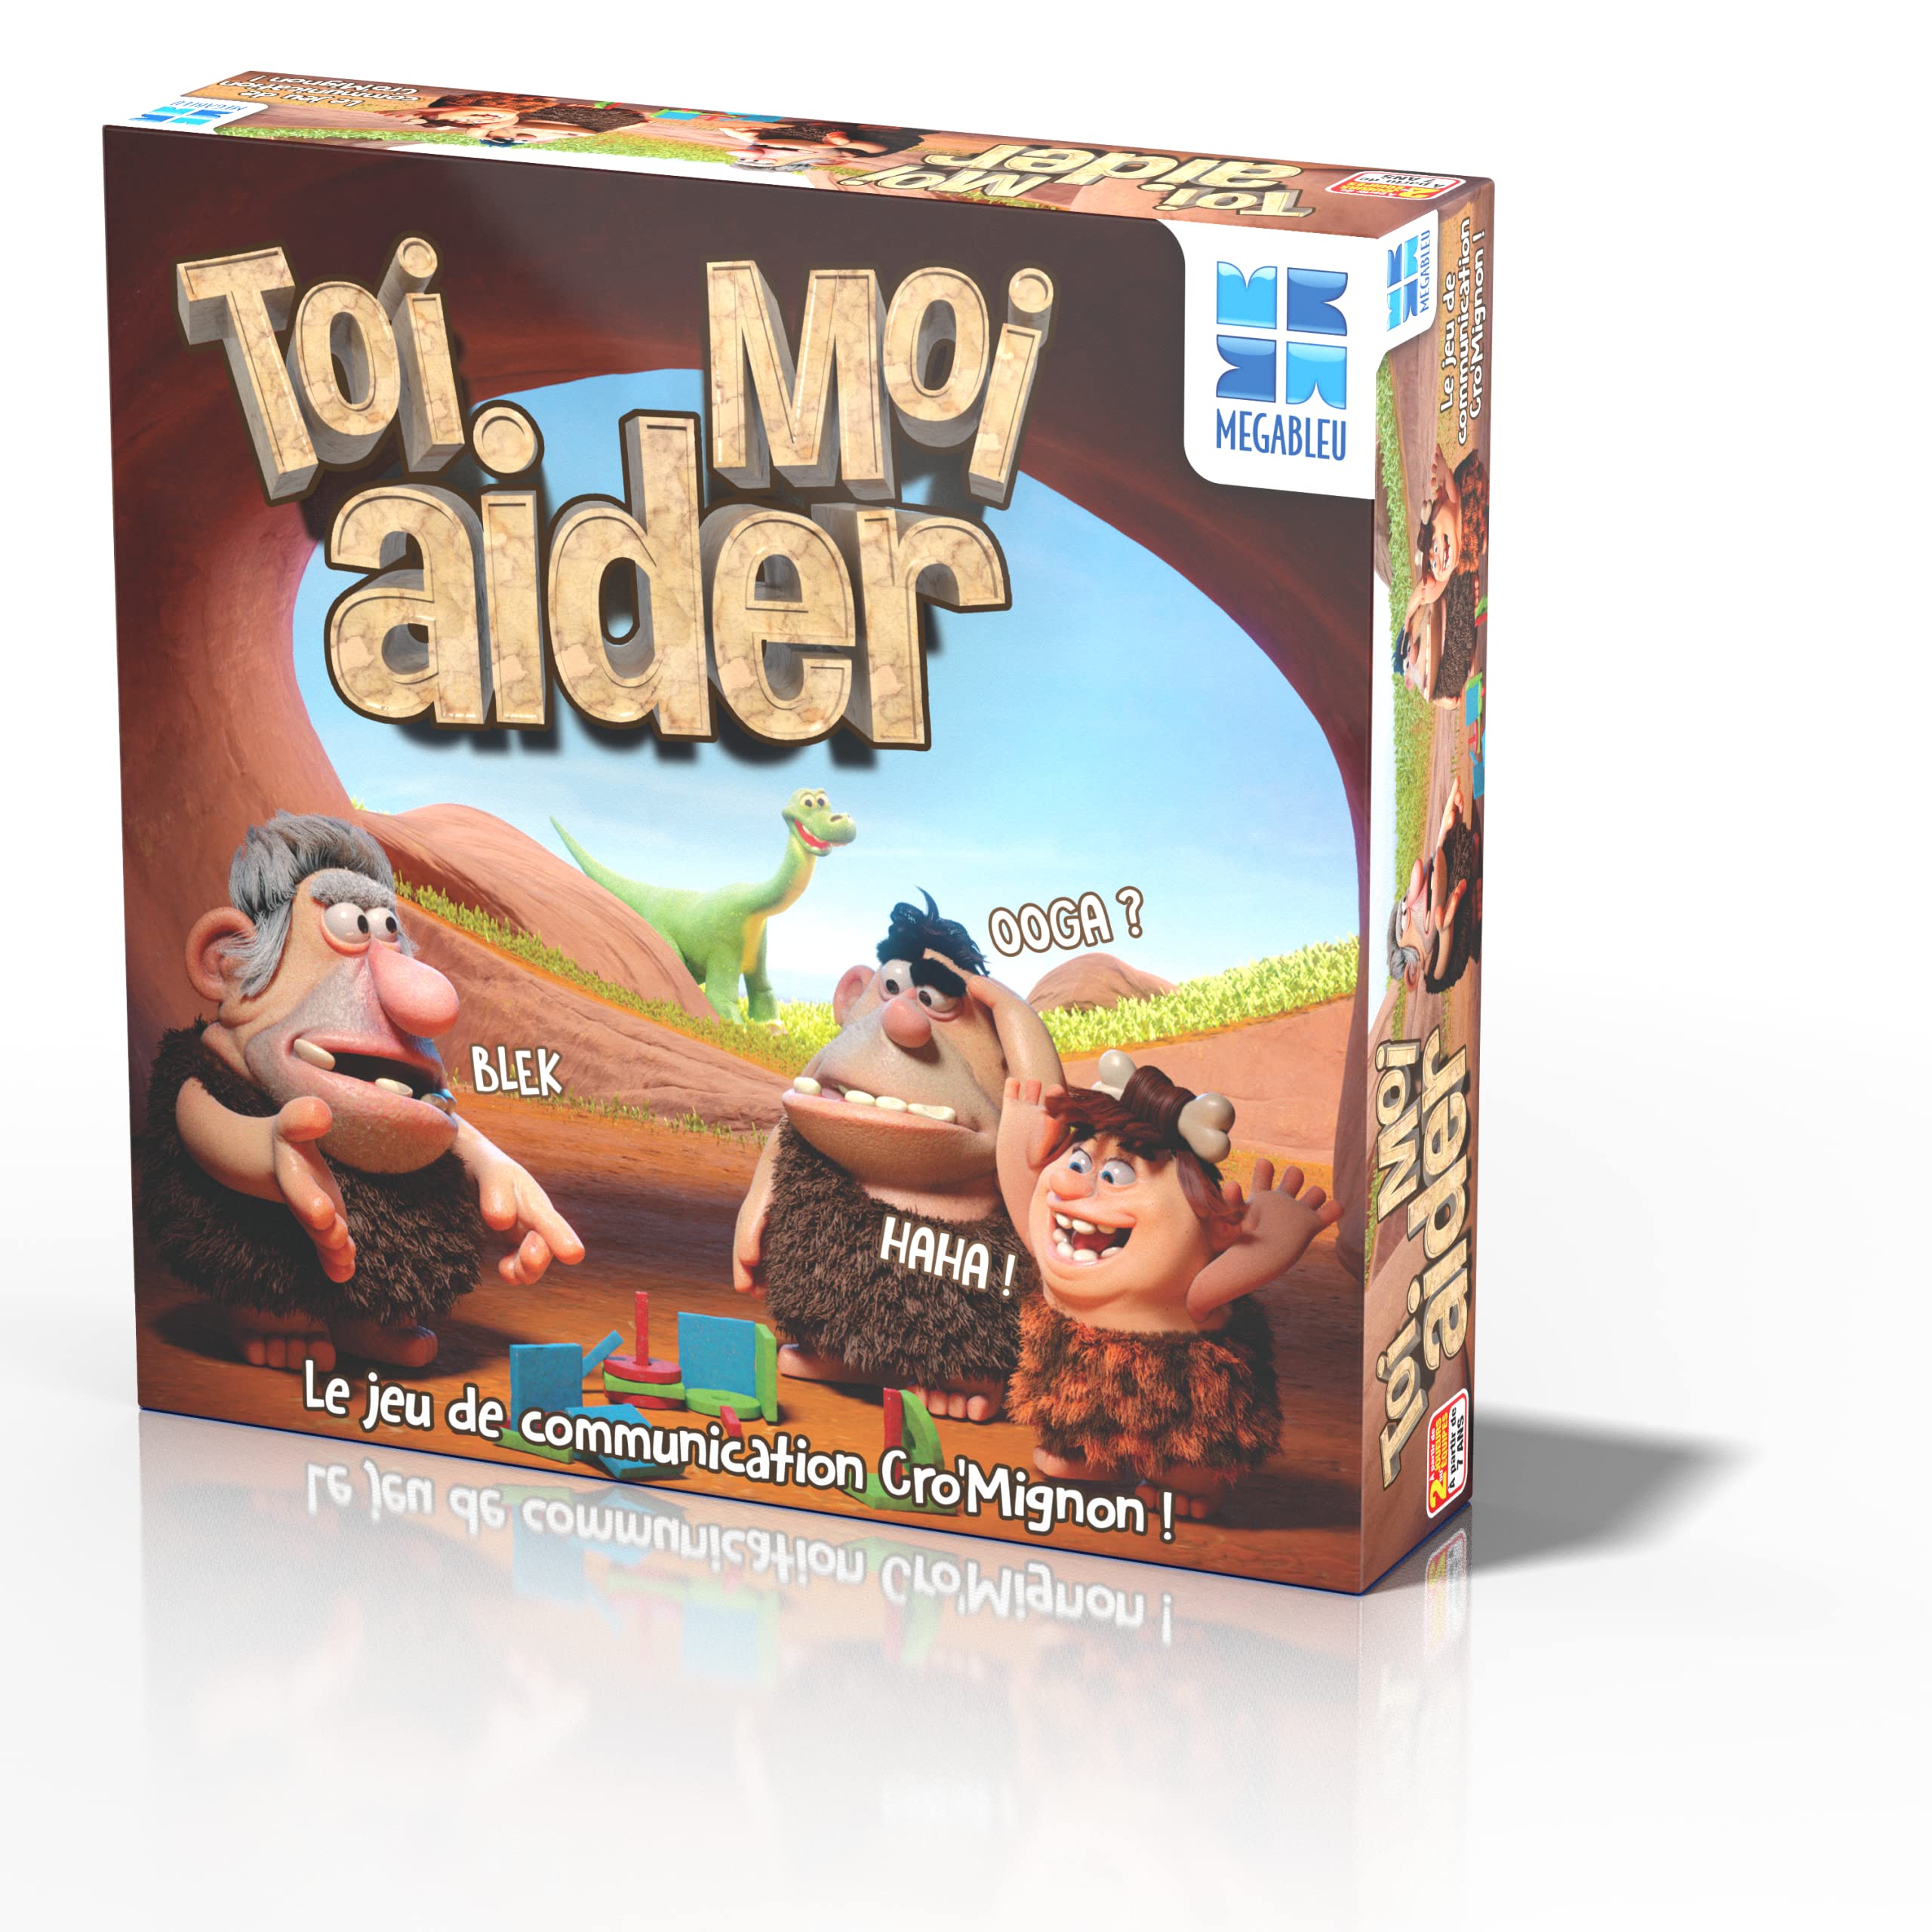 Megableu 678 107 TOI Aider Moi Gesellschaftsspiel – Kommunikationsspiel zum Spielen mit Familie oder Freunden – 2 Spielebenen